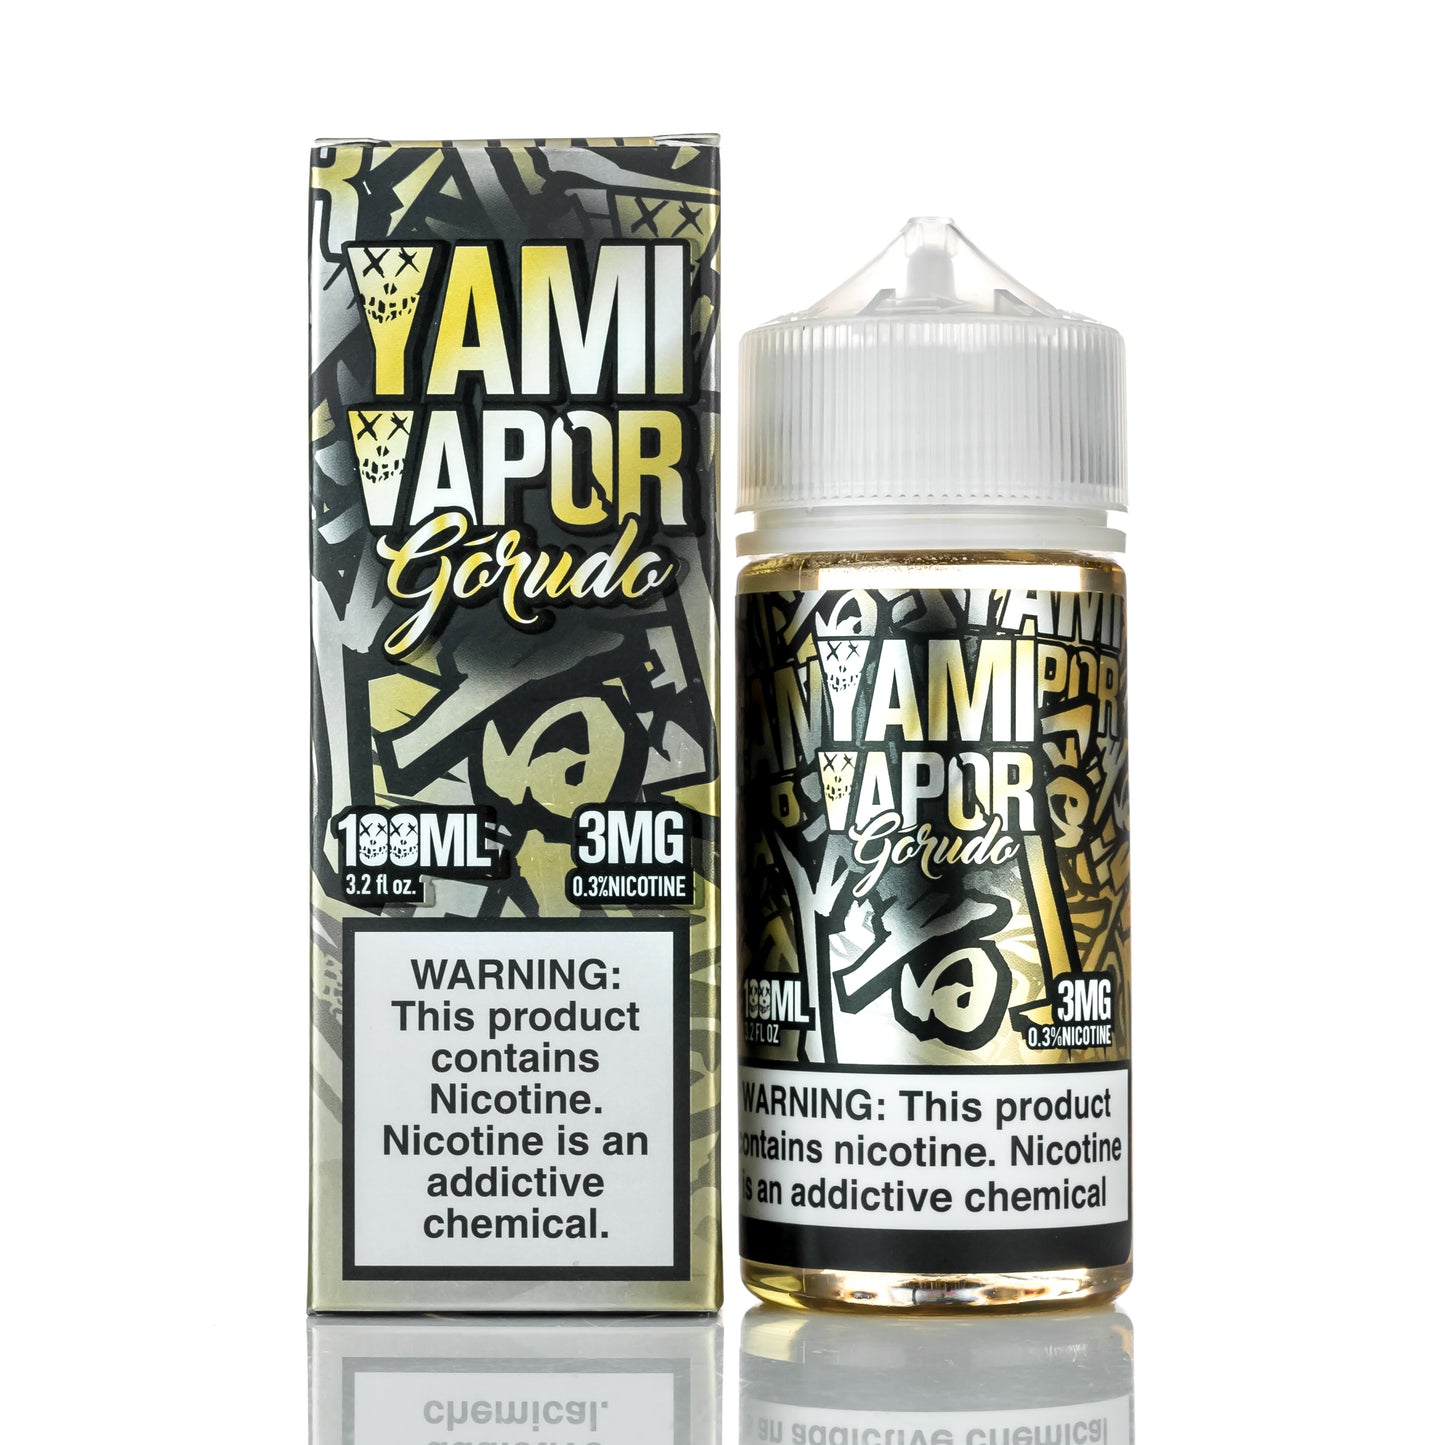 Yami Vapor Gorudo - 100ML